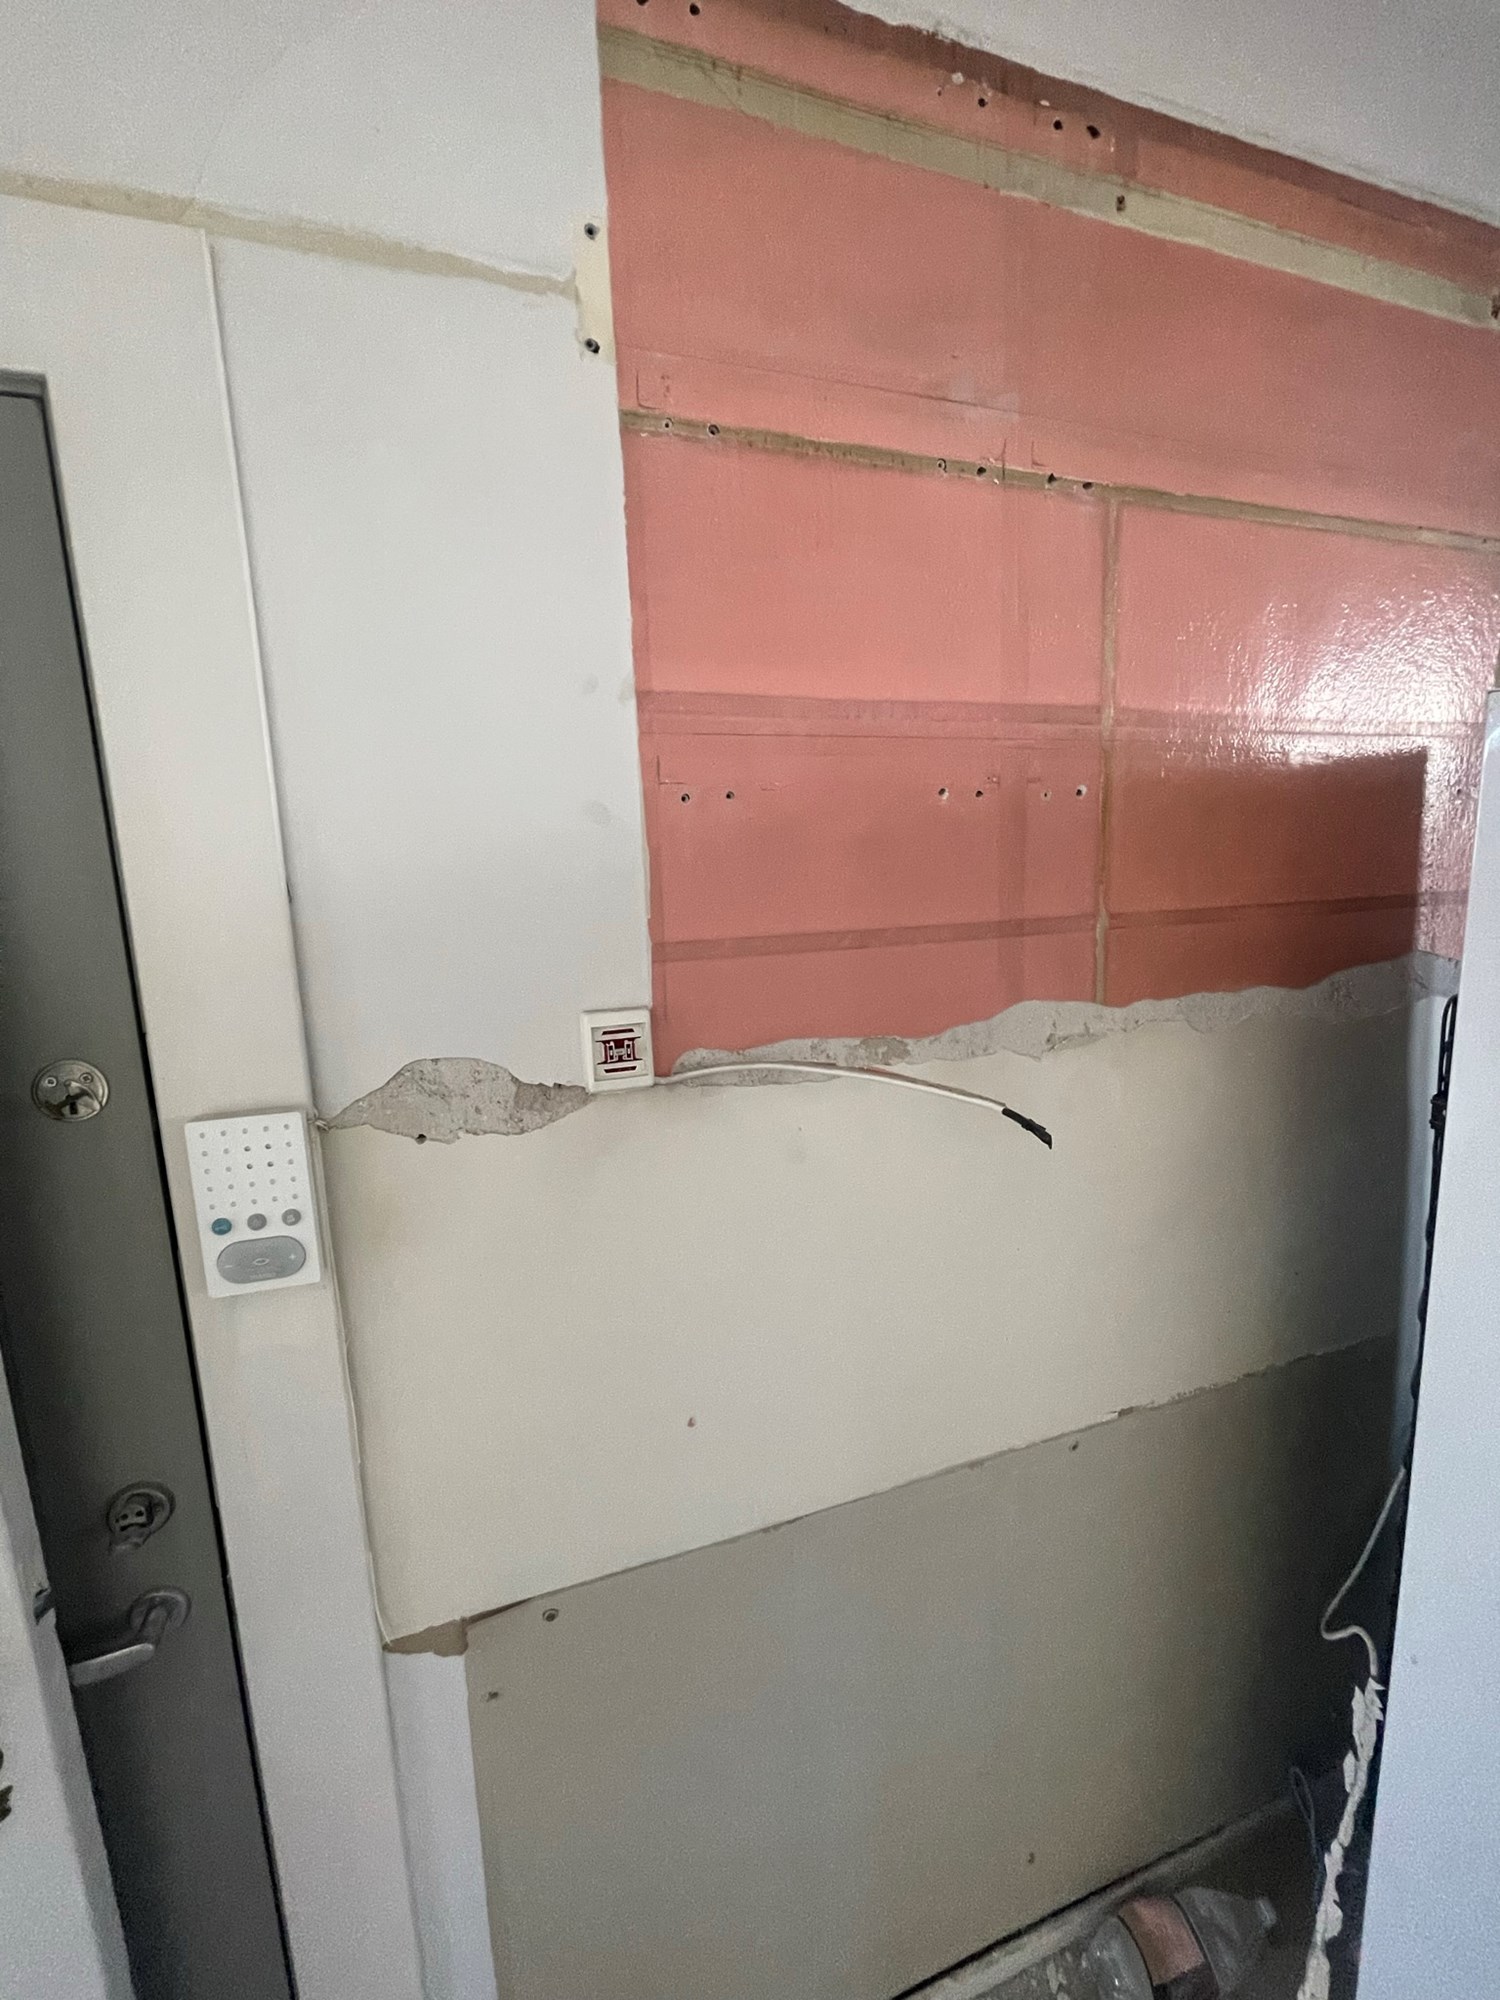 Renovere vegger på gammelt kjøkken - IMG_8100.JPEG - 100Tomler